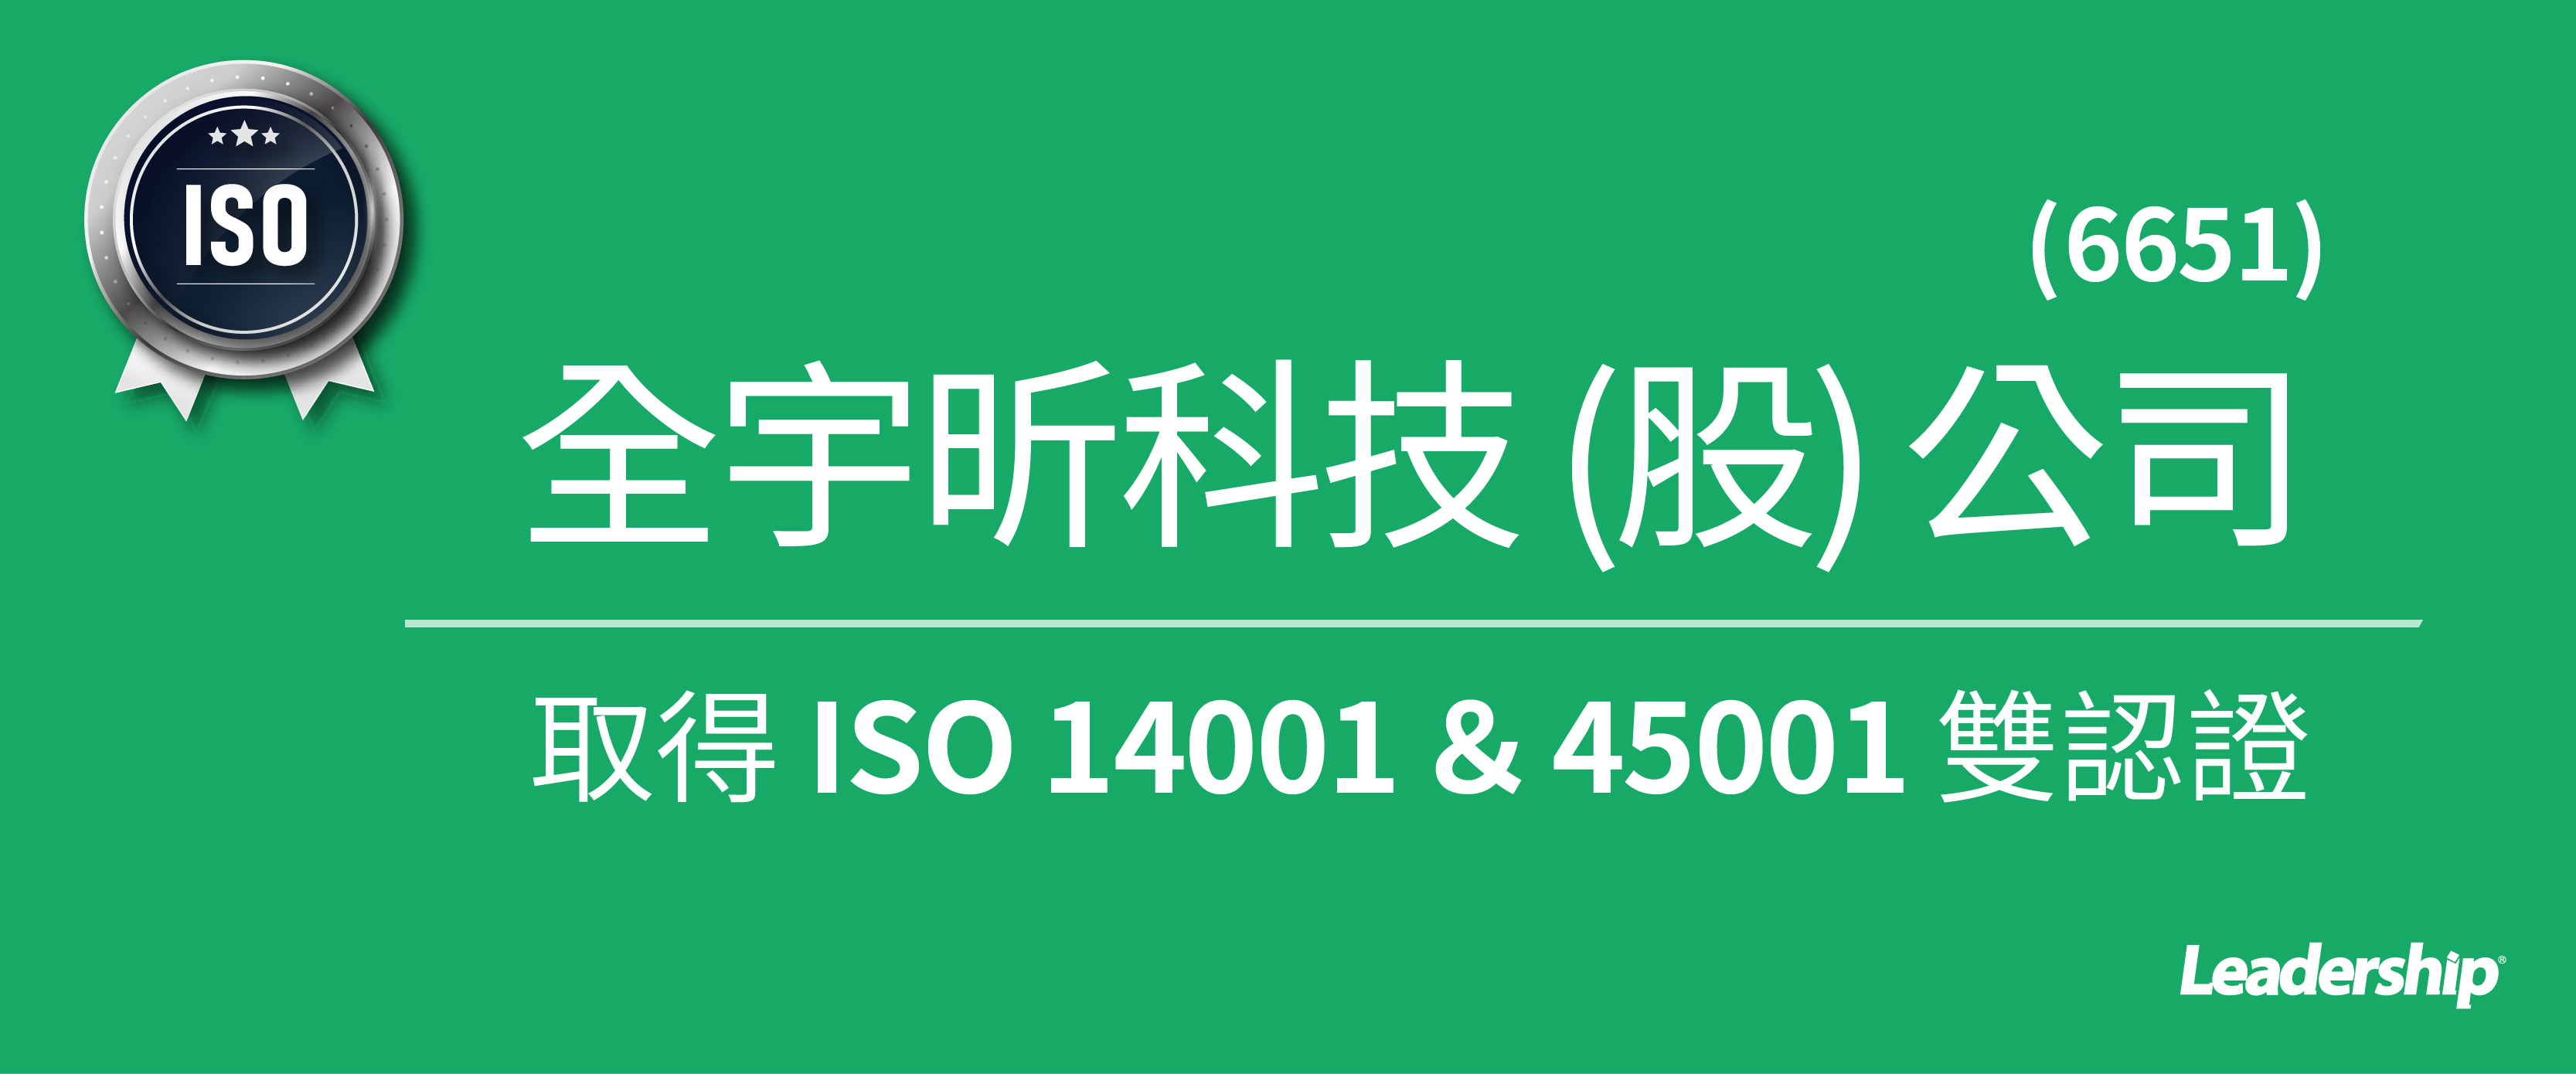 全宇昕 (6651) 恭喜取得 ISO 14001、ISO 45001 雙認證